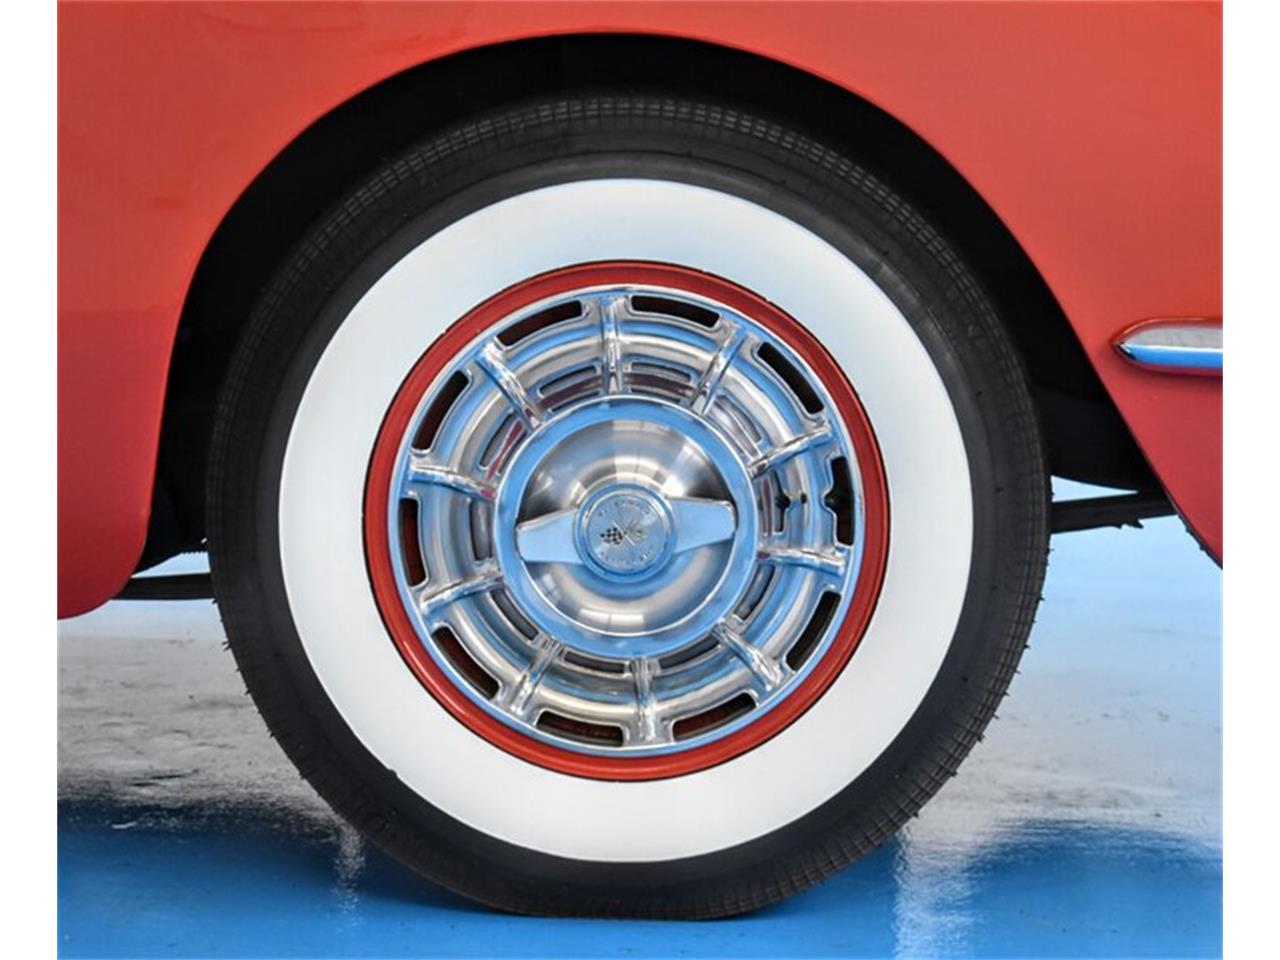 Chevrolet Corvette C1 roman red 1960 exceptionnelle prix tout compris